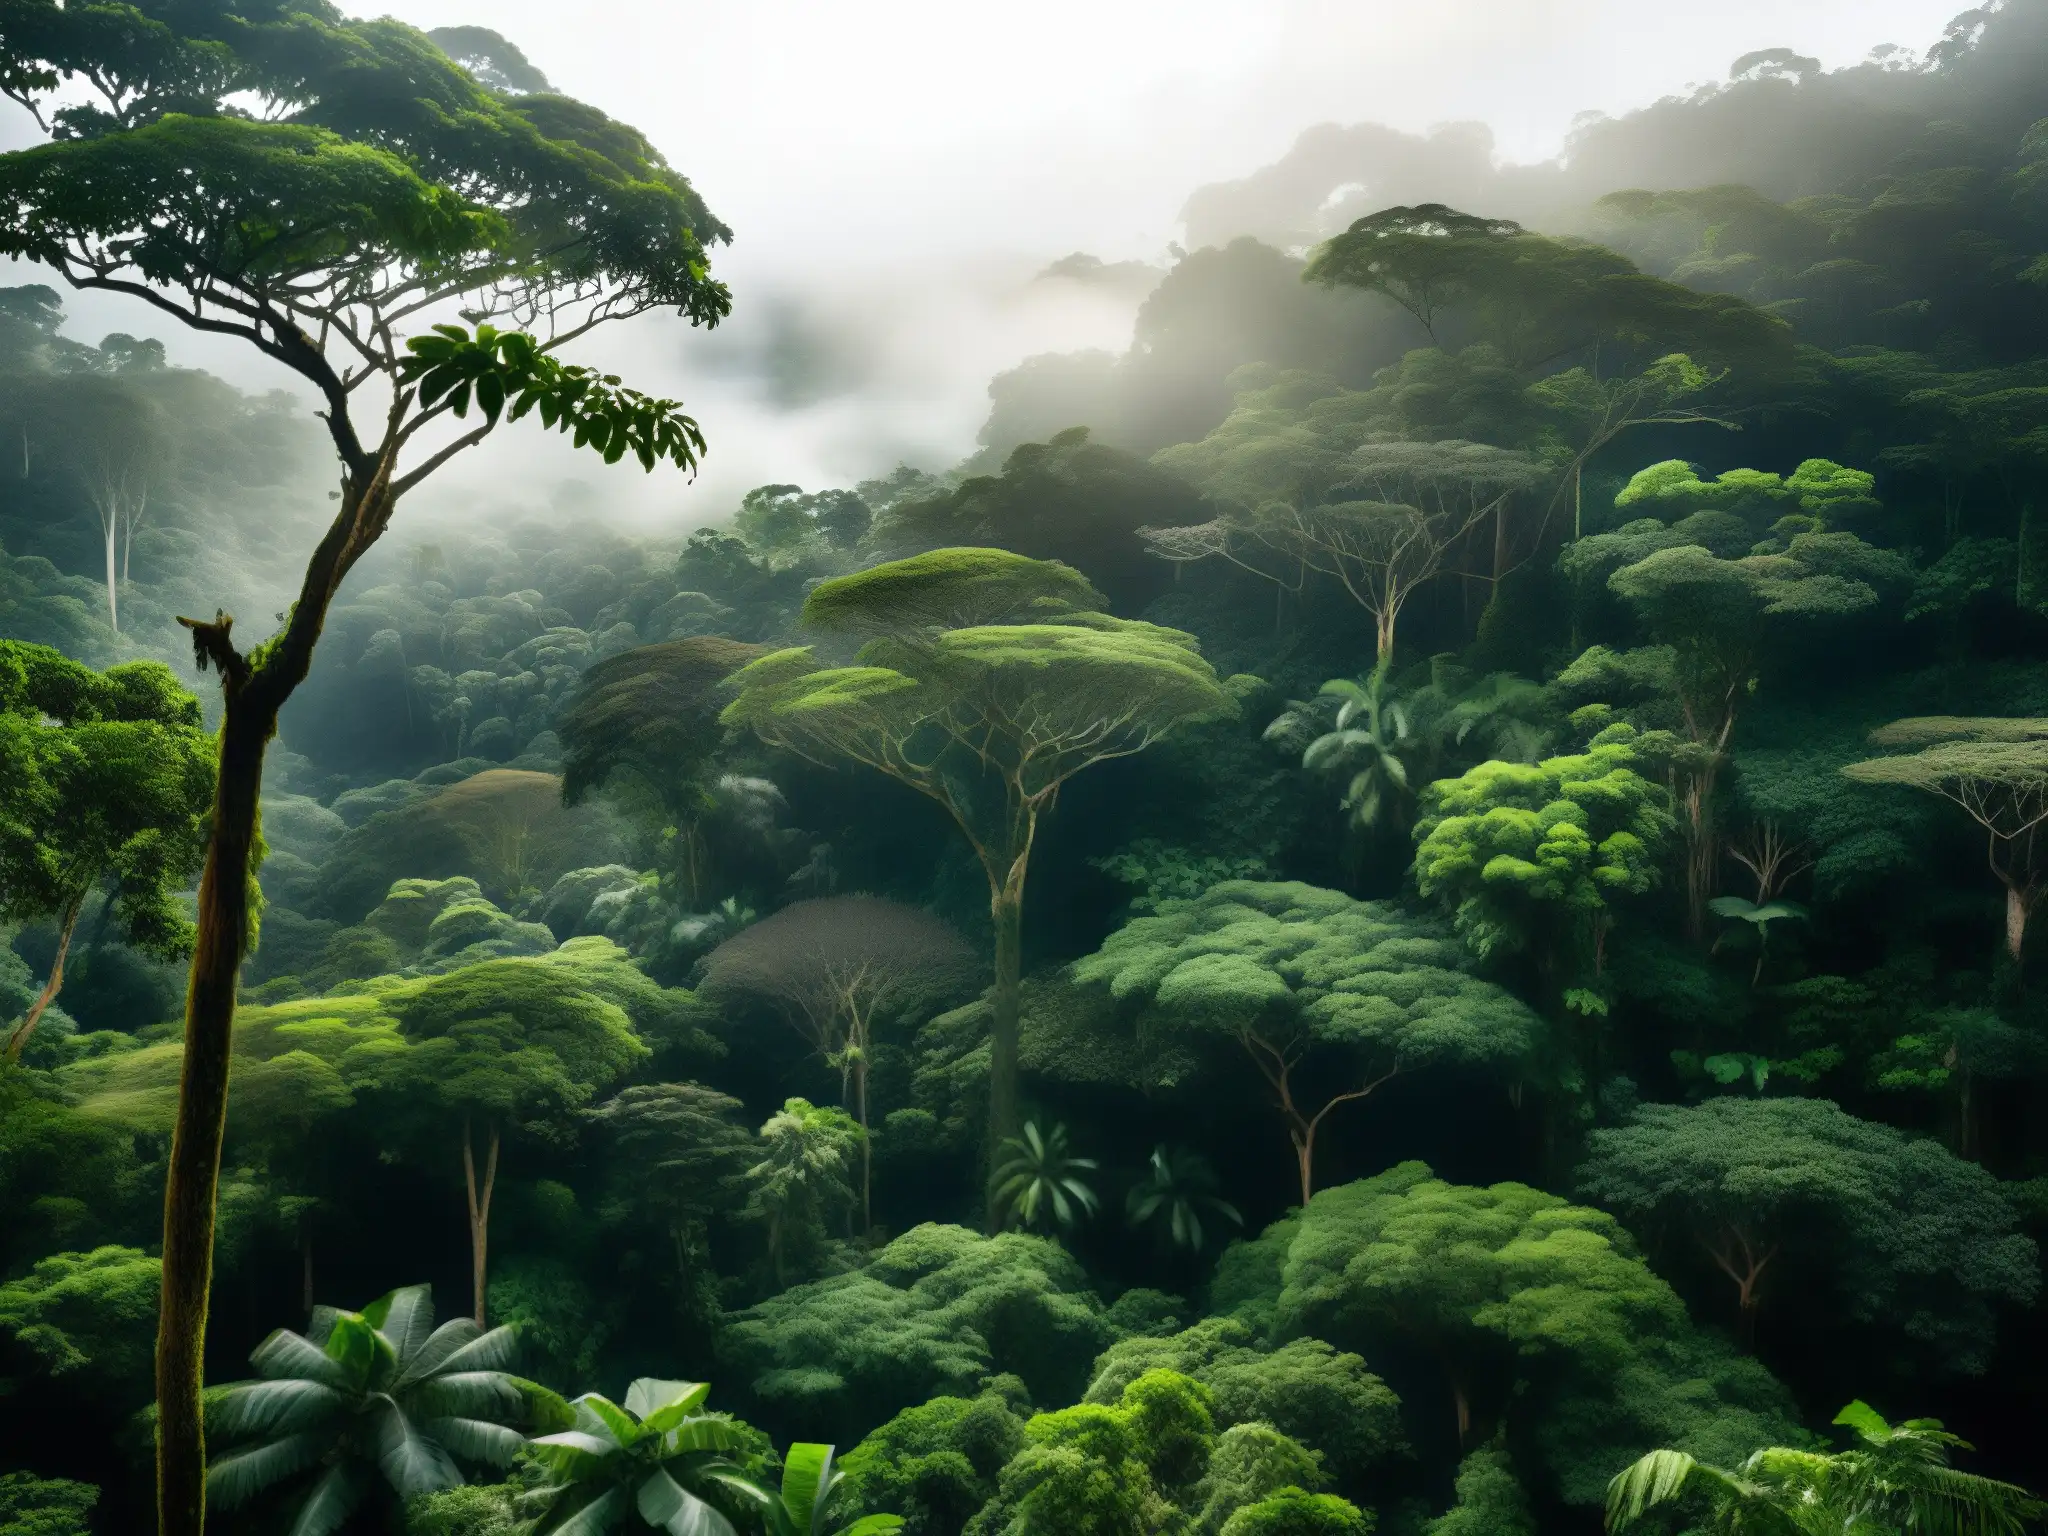 Imagen del exuberante bosque amazónico, con árboles imponentes, follaje verde vibrante y animales salvajes